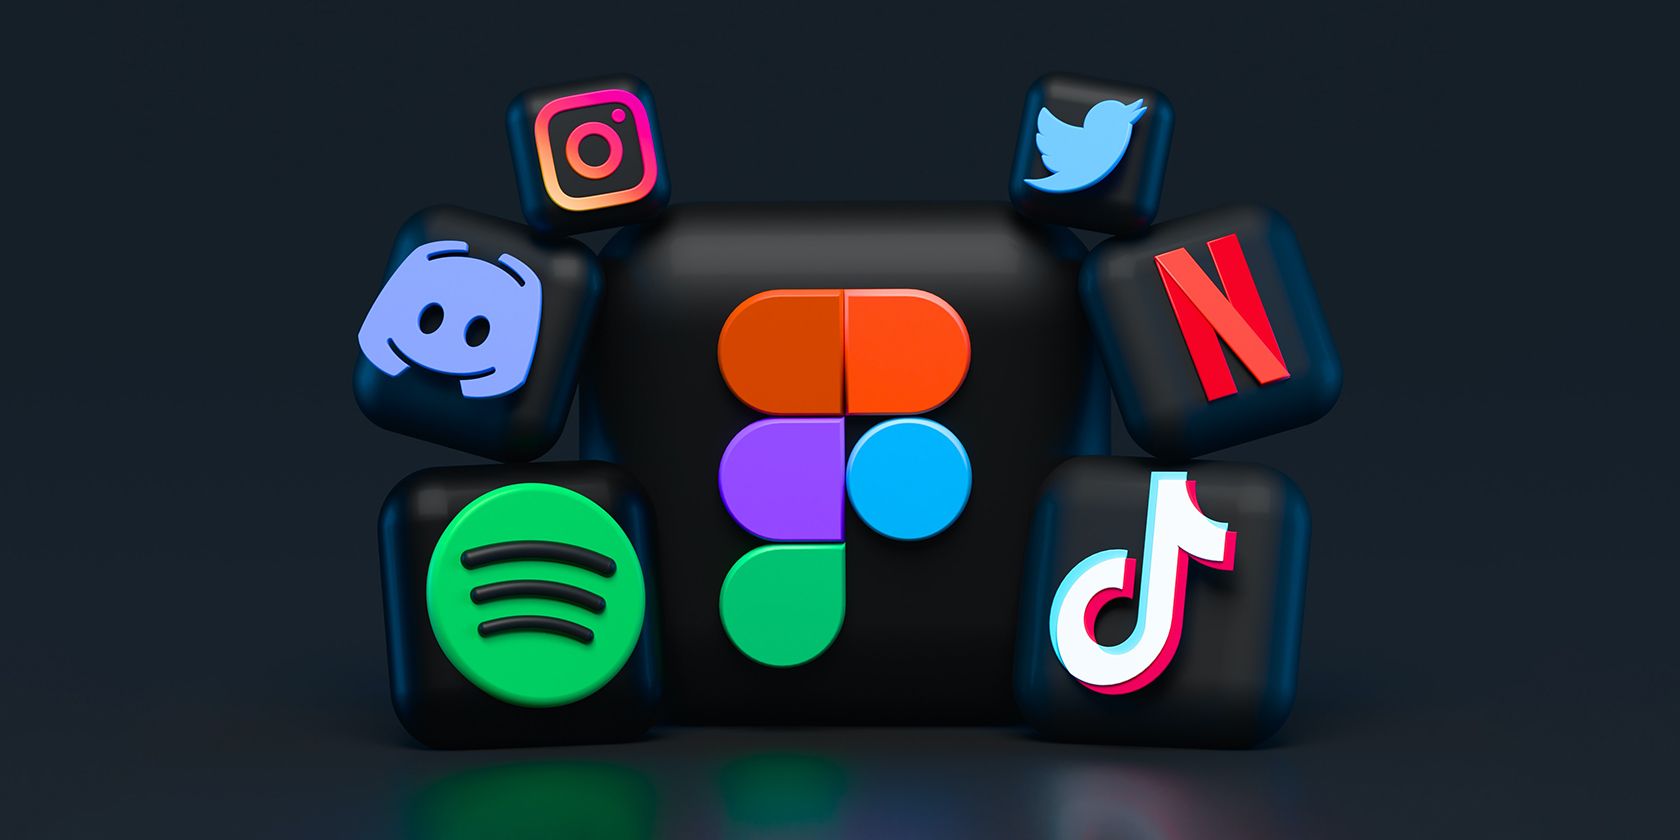 3D logos of some popular social media apps